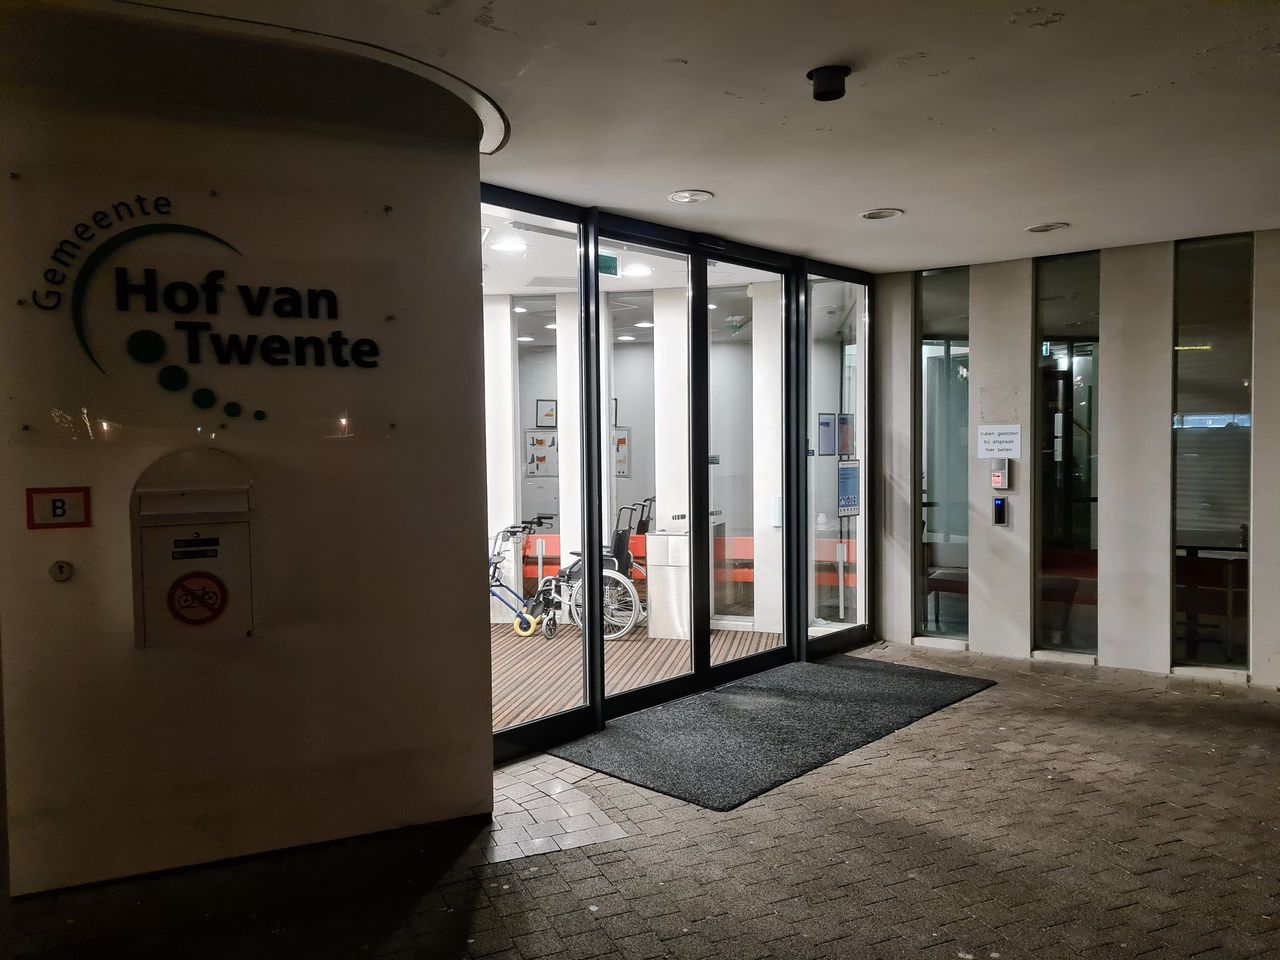 Met wachtwoord ‘Welkom2020’ waren de hackers van gemeente Hof van Twente binnen 